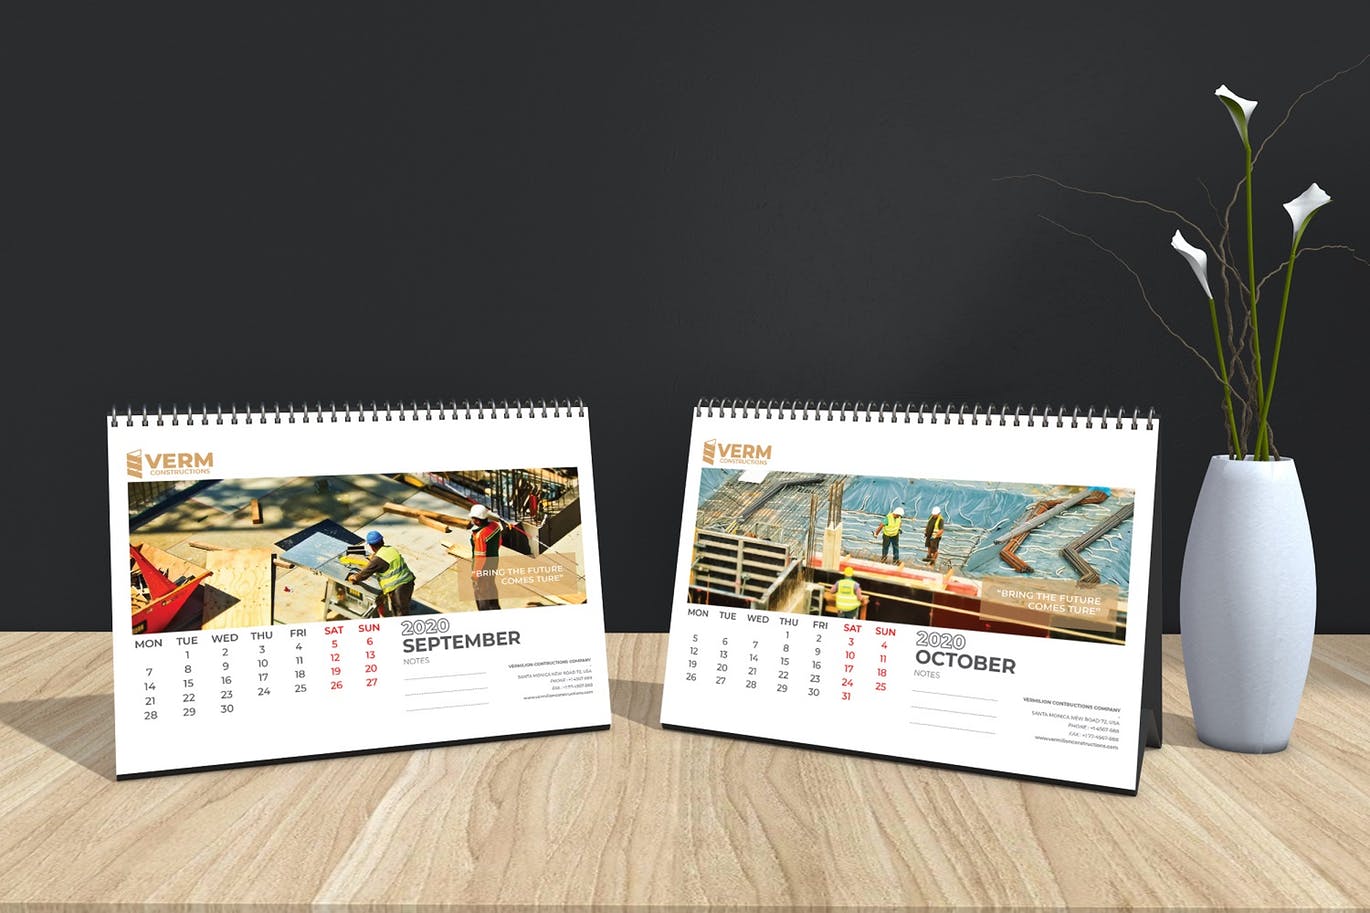 2020年建筑主题台历&挂墙日历表设计模板 Construction Wall & Table Calendar 2020插图(13)